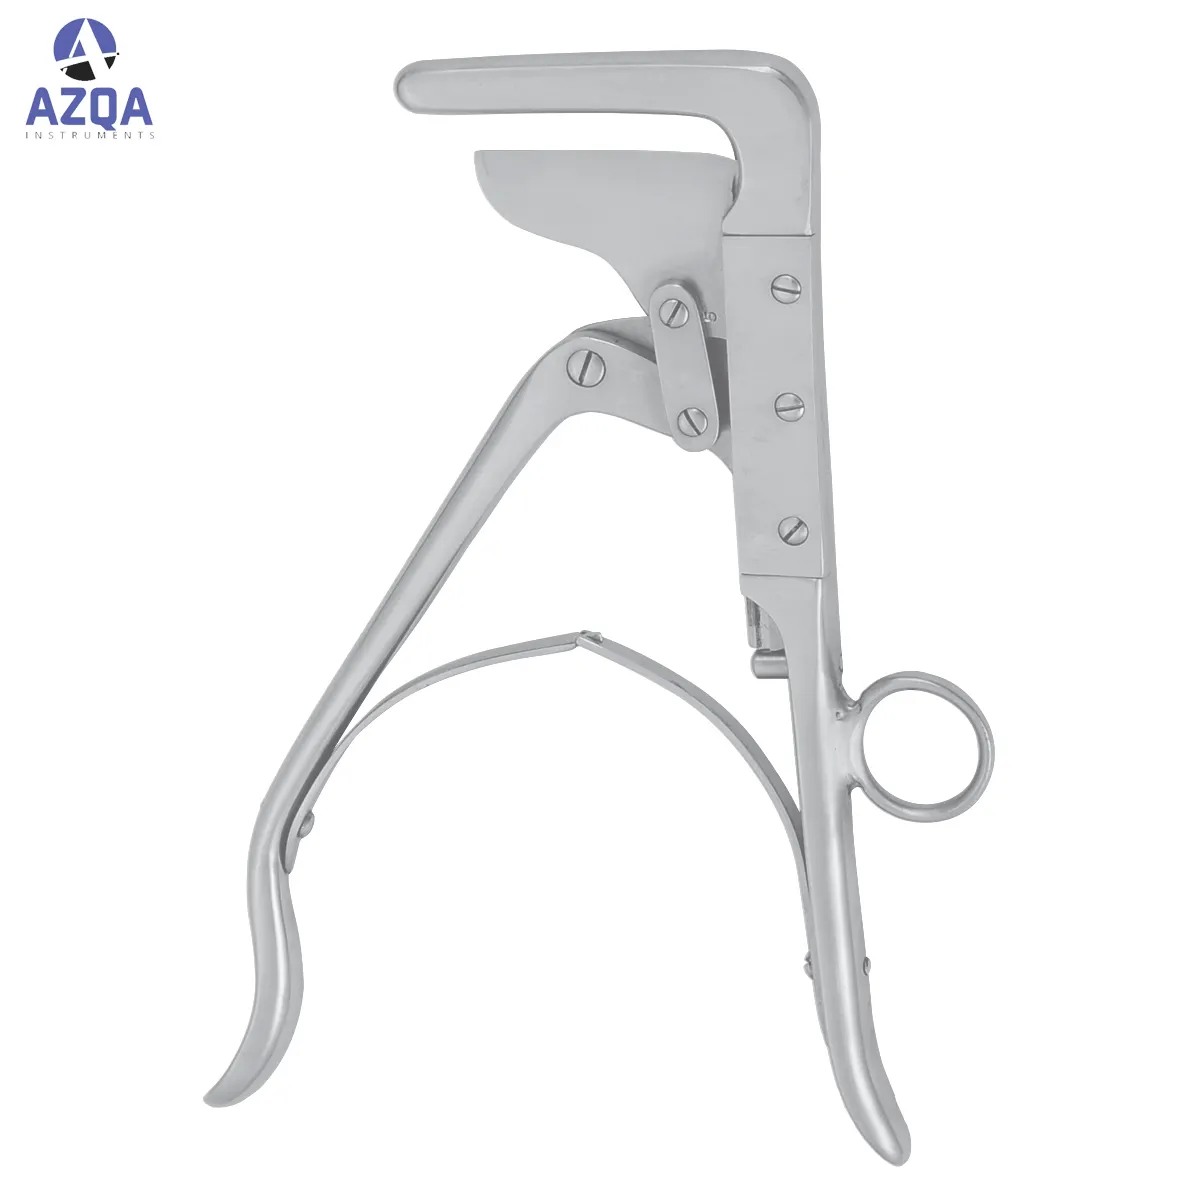 Burax-instruments chirurgicales orthopédiques professionnelles, instruments de stérilisation, fabriqué au Pakistan